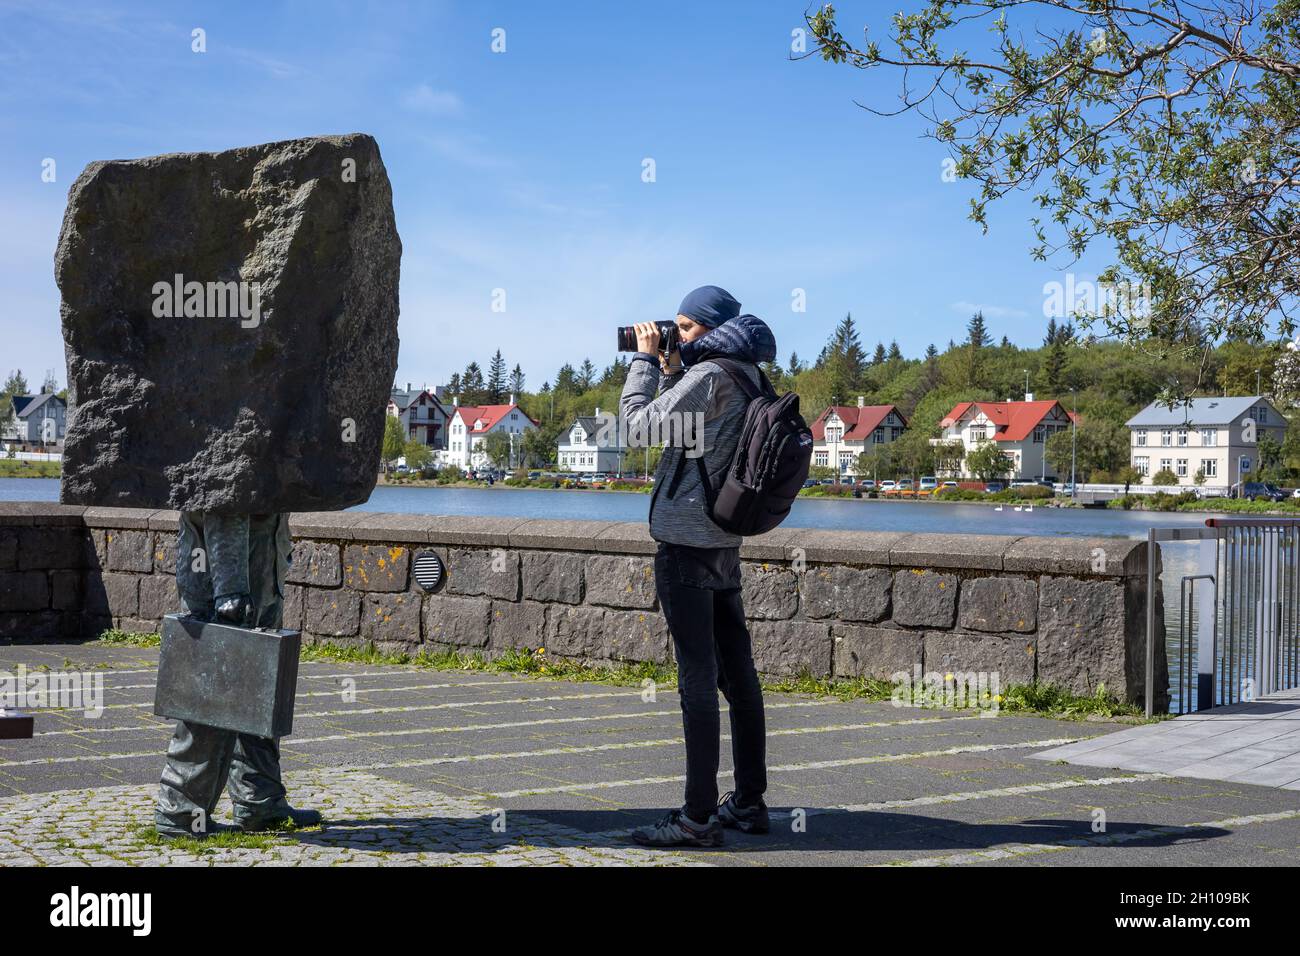 REYKJAVIK, ISLANDA - 12 giugno 2021: Un turista che scatta una foto di un 'Monumento al burocrate ignoto' di Magnus Tomasson, sul bordo del lago Tjornyn. Foto Stock